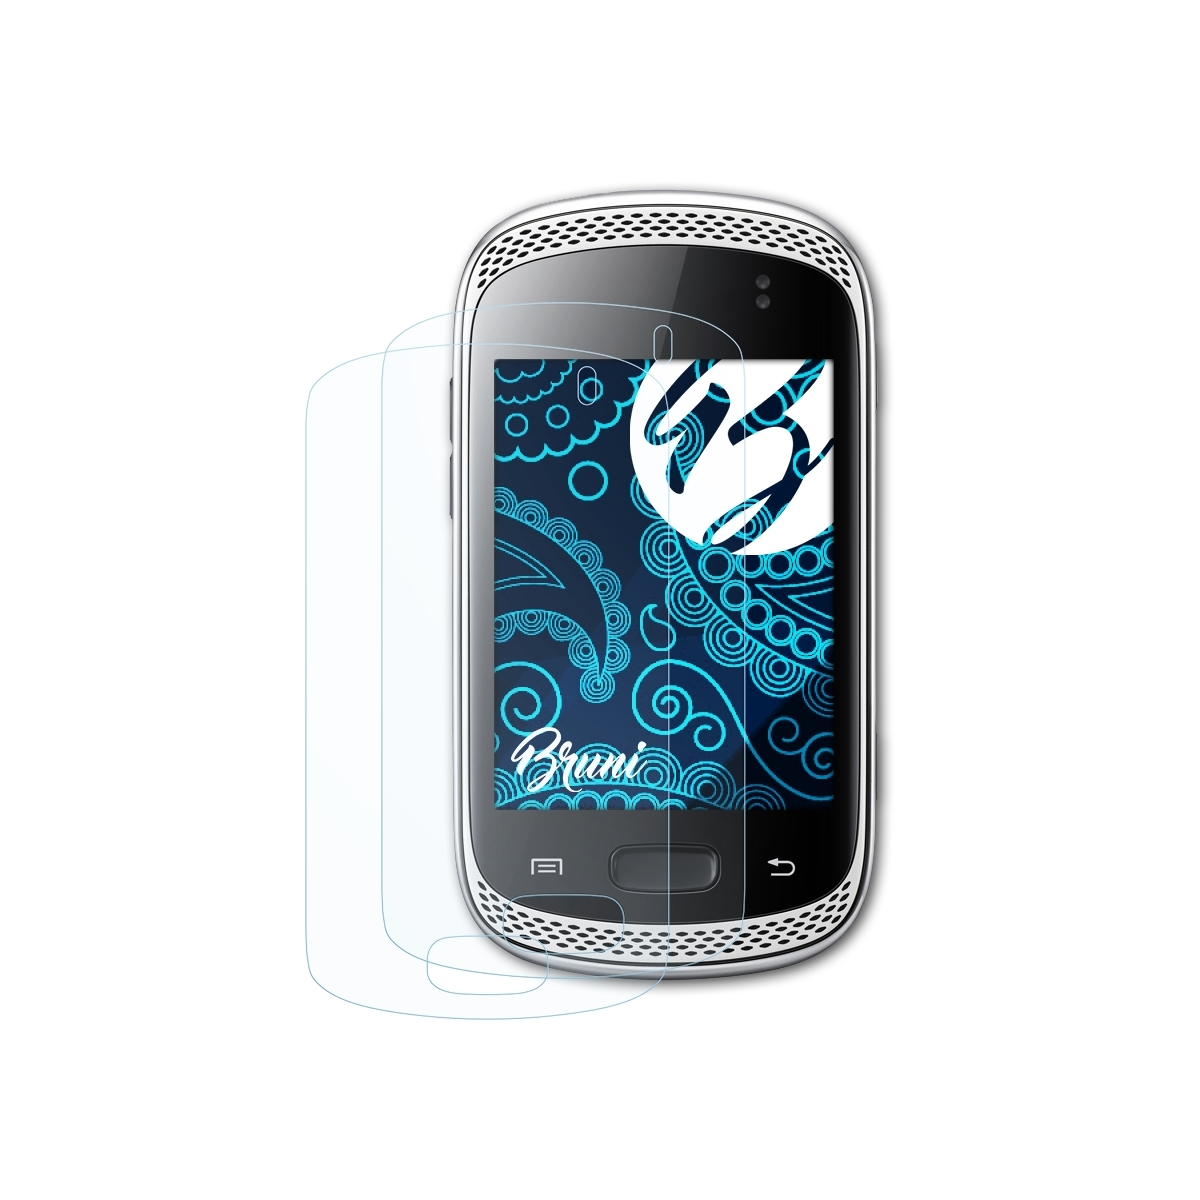 Schutzfolie(für (GT-S6010)) 2x BRUNI Samsung Galaxy Basics-Clear Music